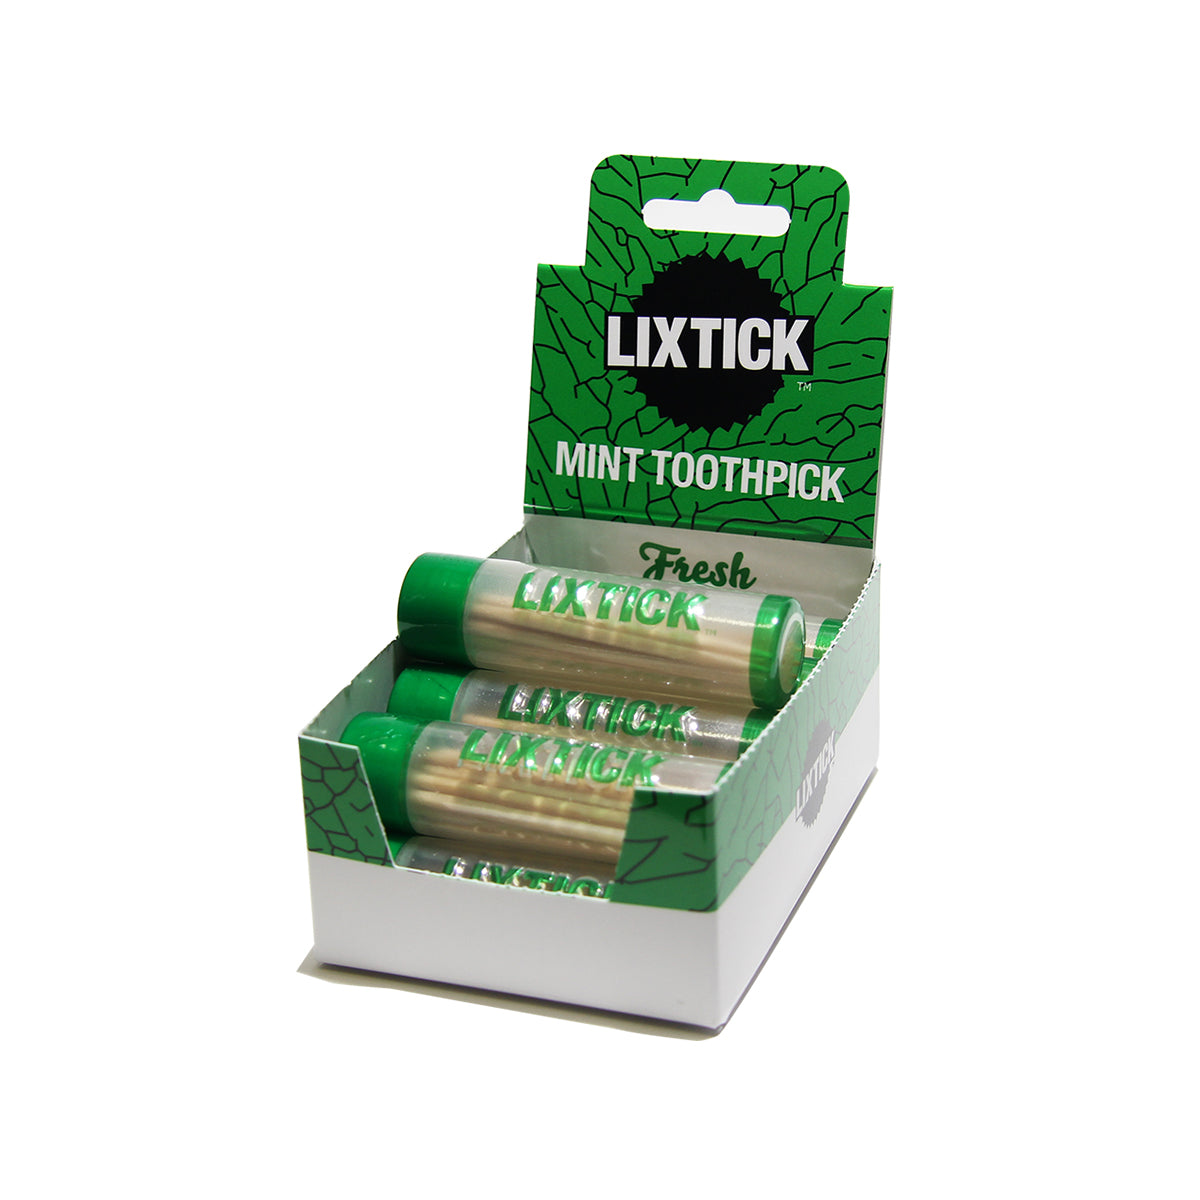 Lixtick Flavored Toothpick